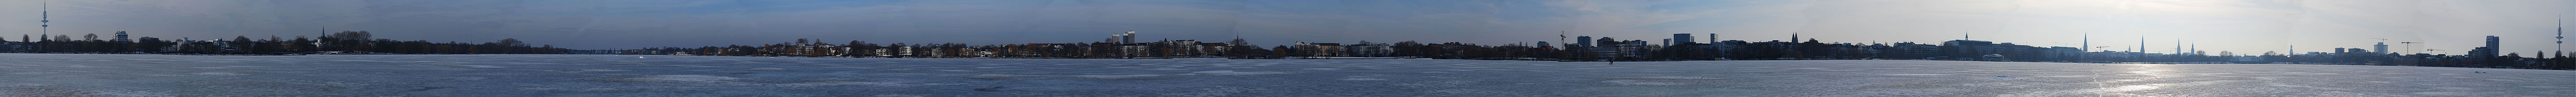 Panorama von Hamburg, von der zugefrorenen Außenalster aus gesehen, Februar 2010